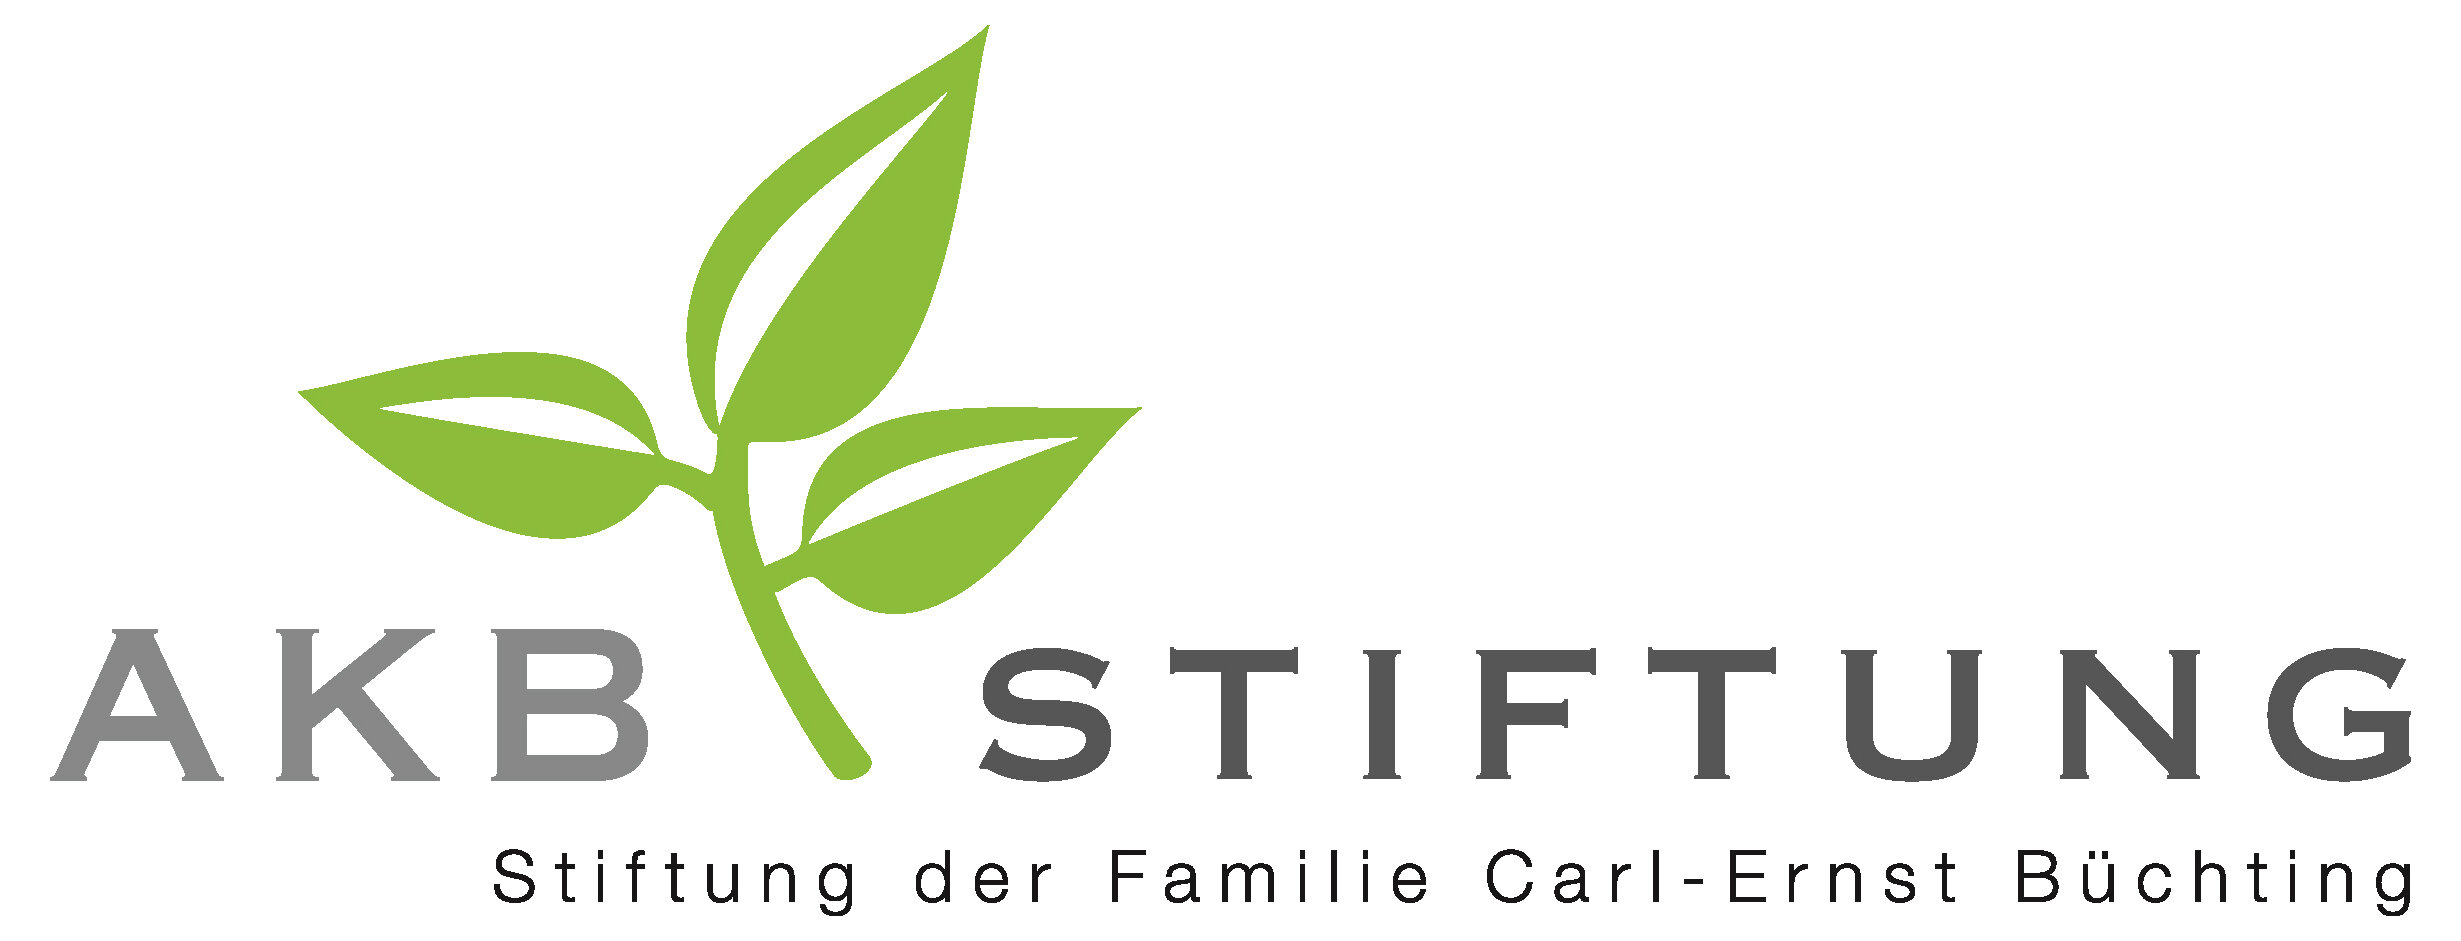 AKB-Stiftung-Logo.jpg